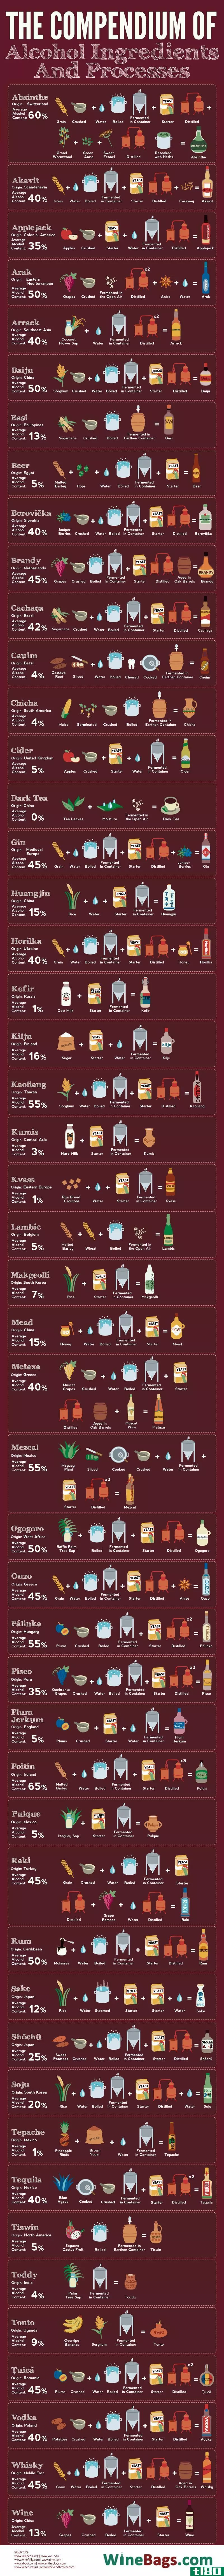 这张图显示了世界各地的饮料和烈酒是如何生产的